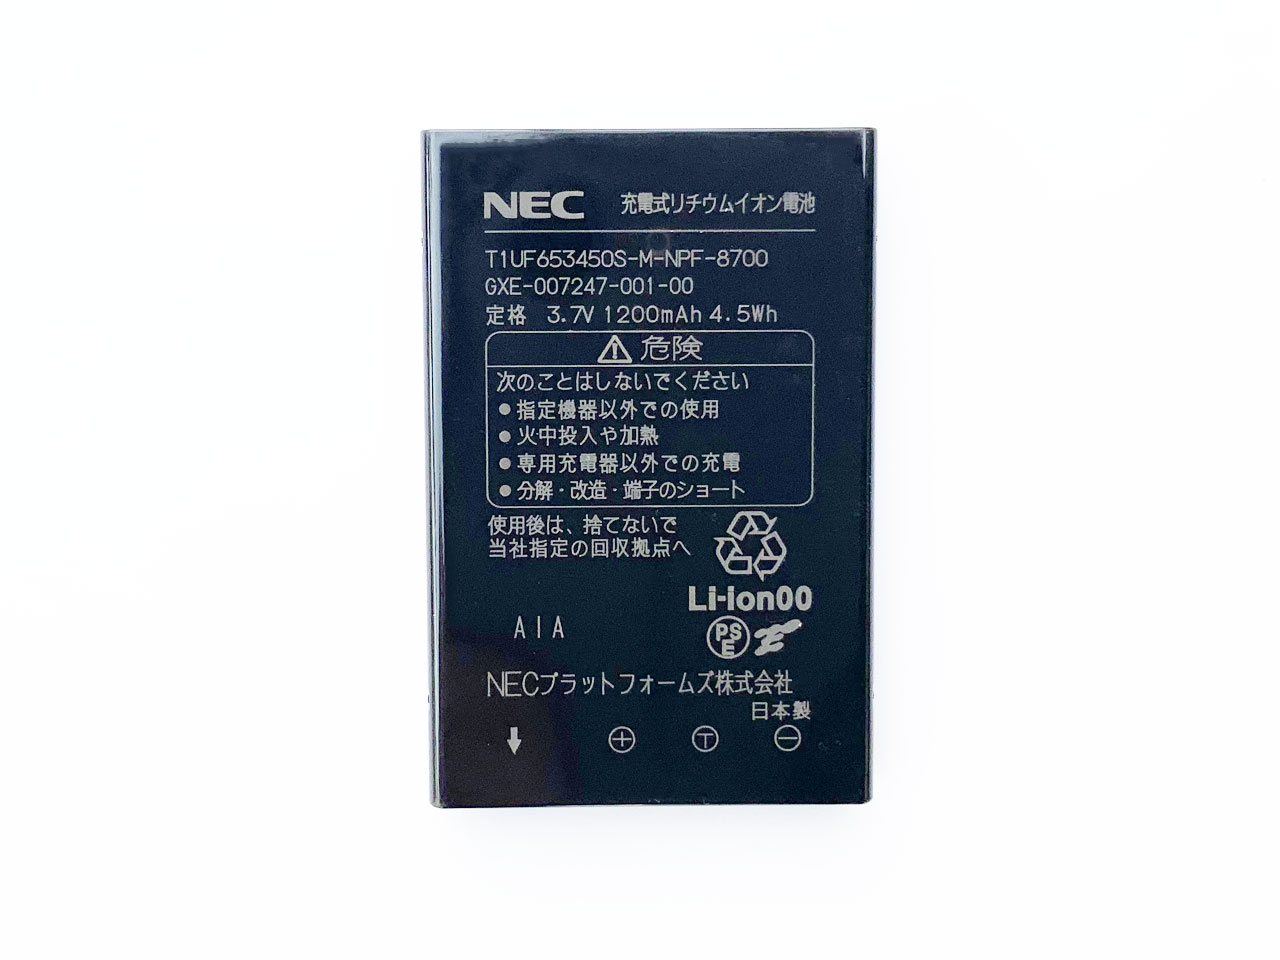 NEC DTL-24BT/DTZ-24BT カールコードレス電話機 電池 GXE-007247-001-00